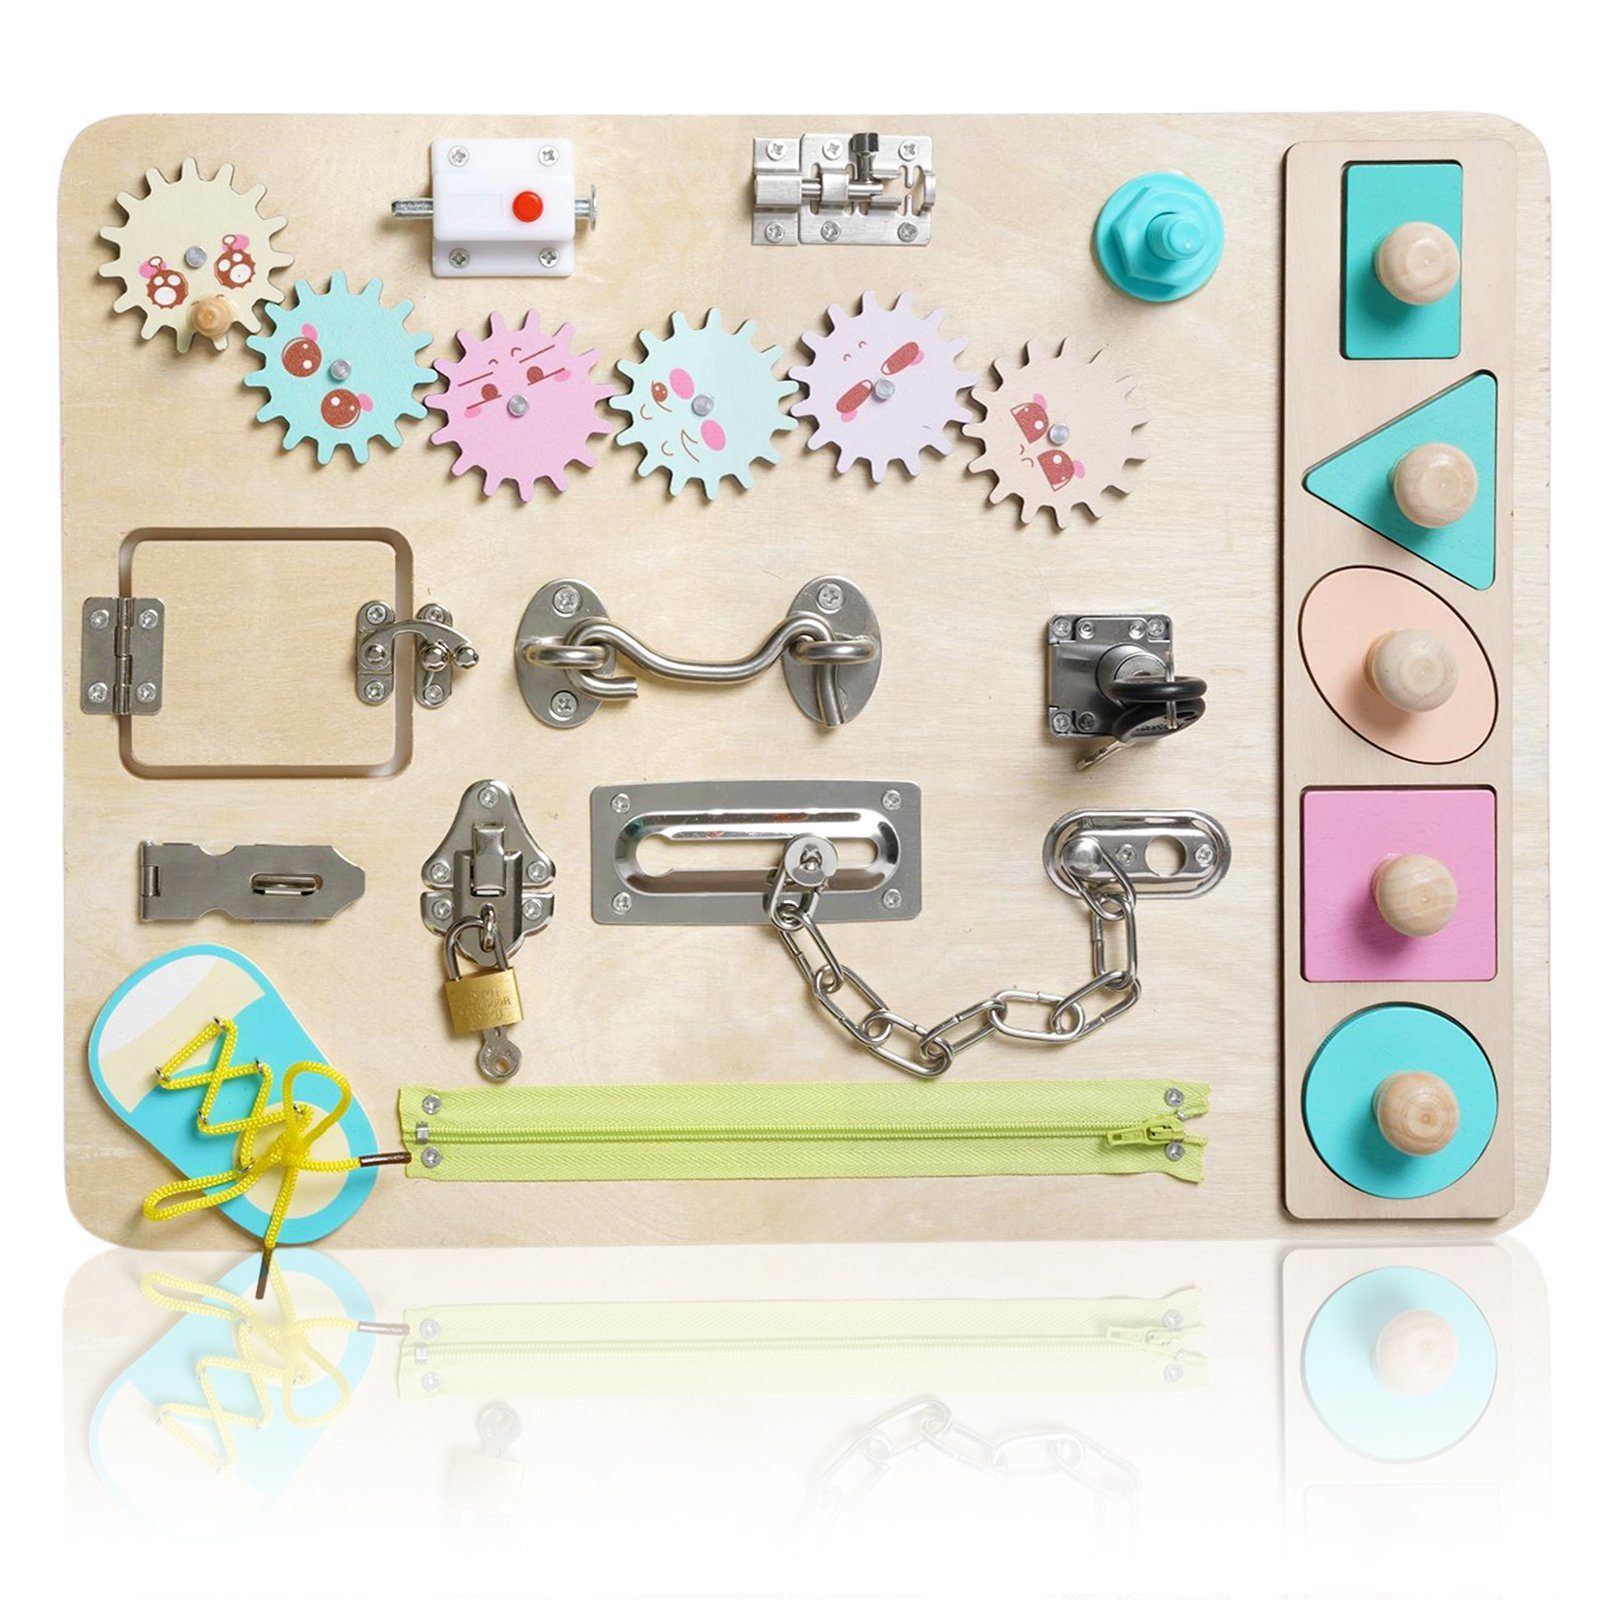 LBLA Lernspielzeug Busy Board Montessori Activity Board Holzspielzeug, Pädagogisches Sensorisches Lernspielzeug für Kleinkinder ab 1 Jahre